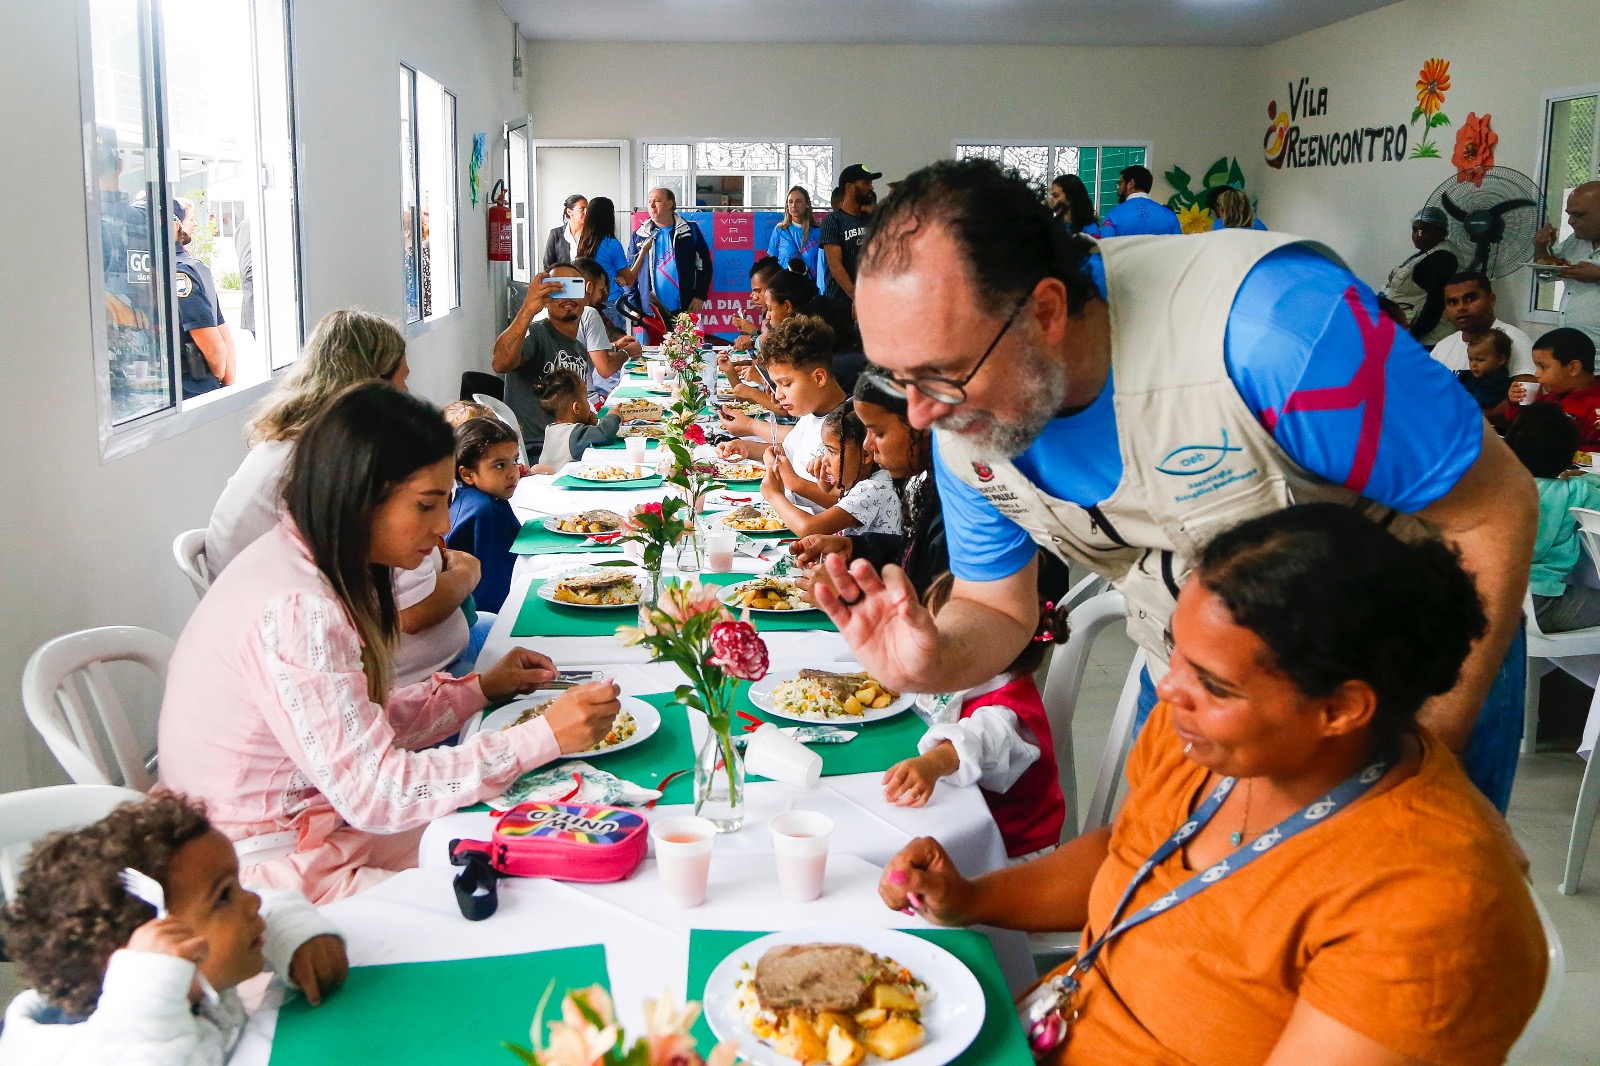 Na imagem, os moradores da Vila Reencontro Pari estão sentados em mesas brancas e almoçando. No fundo, há parede brancas e janelas em vidro. Atrás de uma das acolhidas, o secretário Carlos Bezerra Jr., inicia uma conversa.